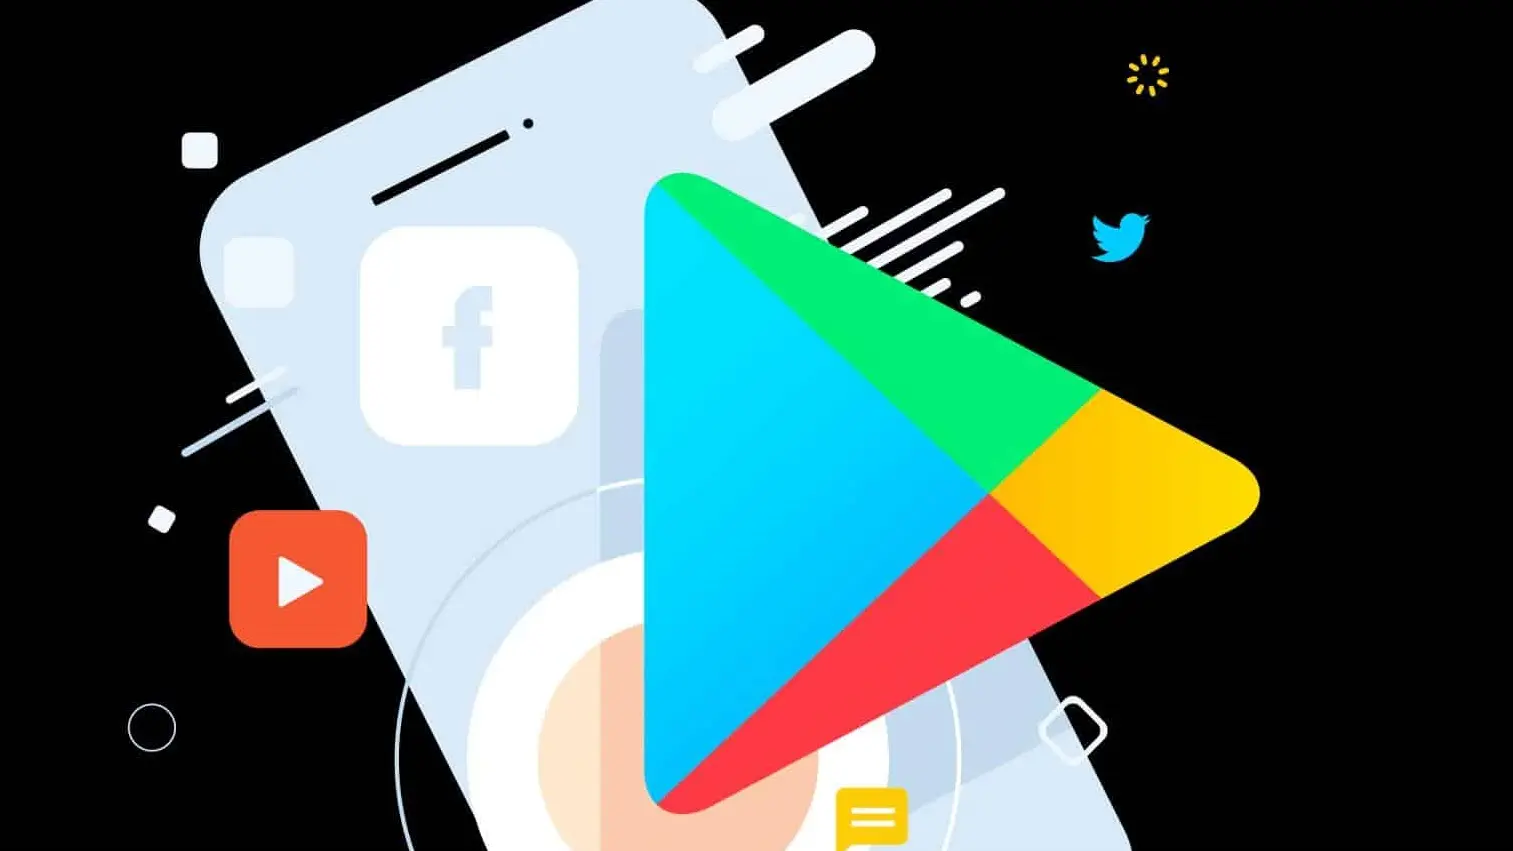 20 apps android poderosos que não estão na google play store. Alguns aplicativos poderosos e muito úteis podem ser encontrados fora da google play store. Confira 20 deles e descubra a sua utilidade!